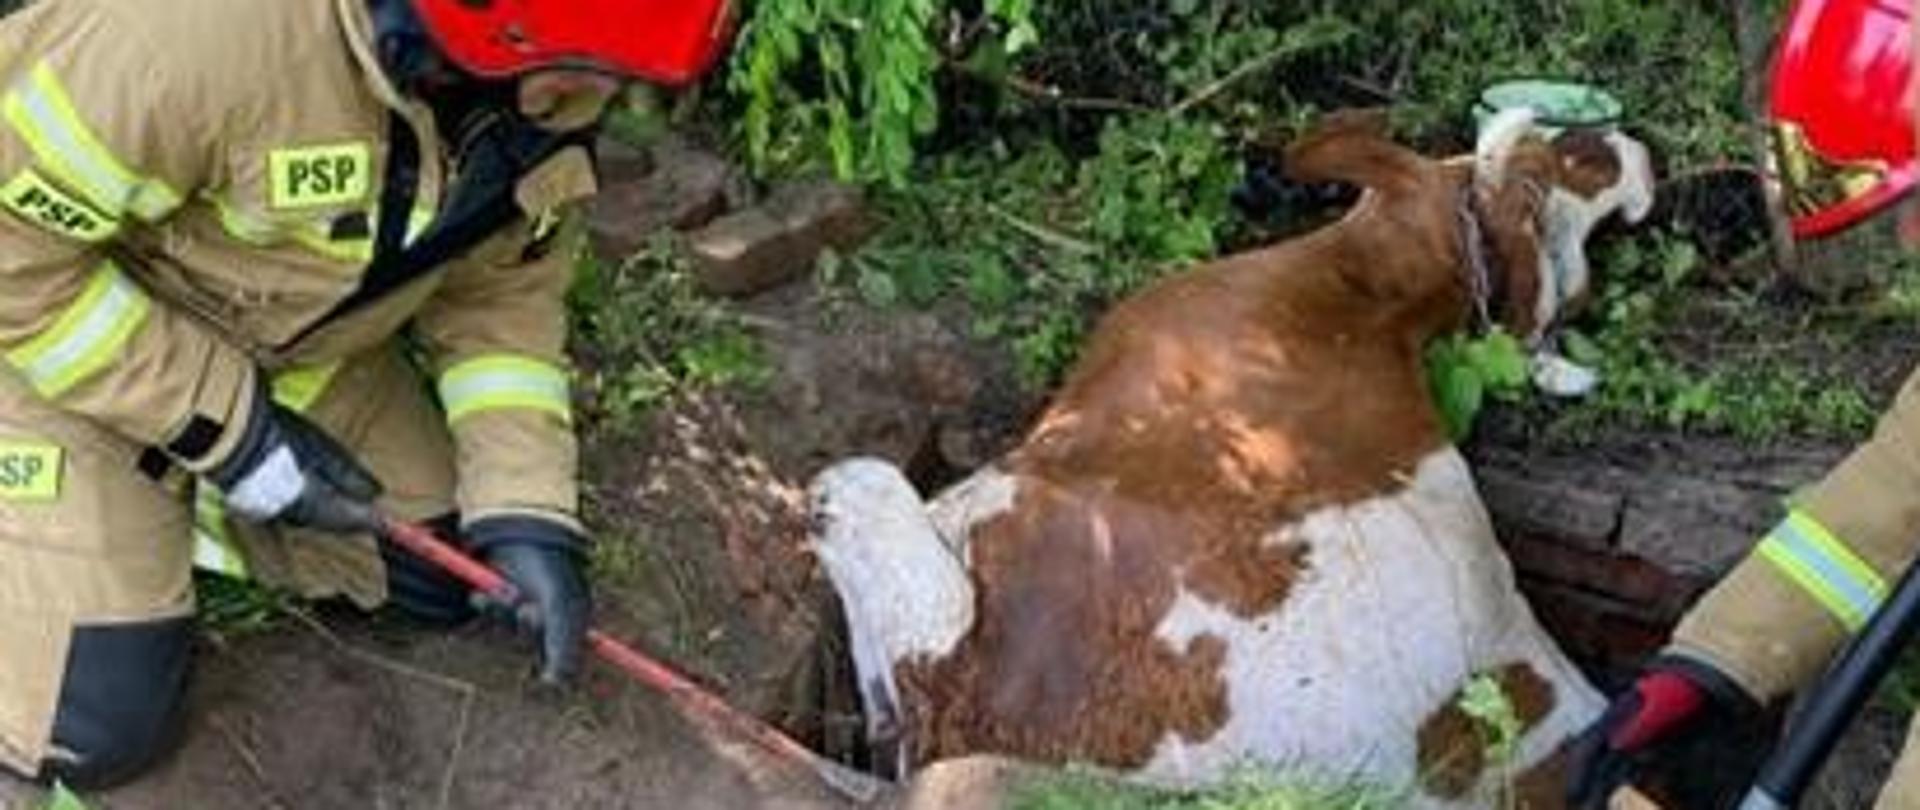 Uwieziona krowa znajduje się w studzience rewizyjnej. Strażacy przy pomocy łopat rozkopują boki studzienki.